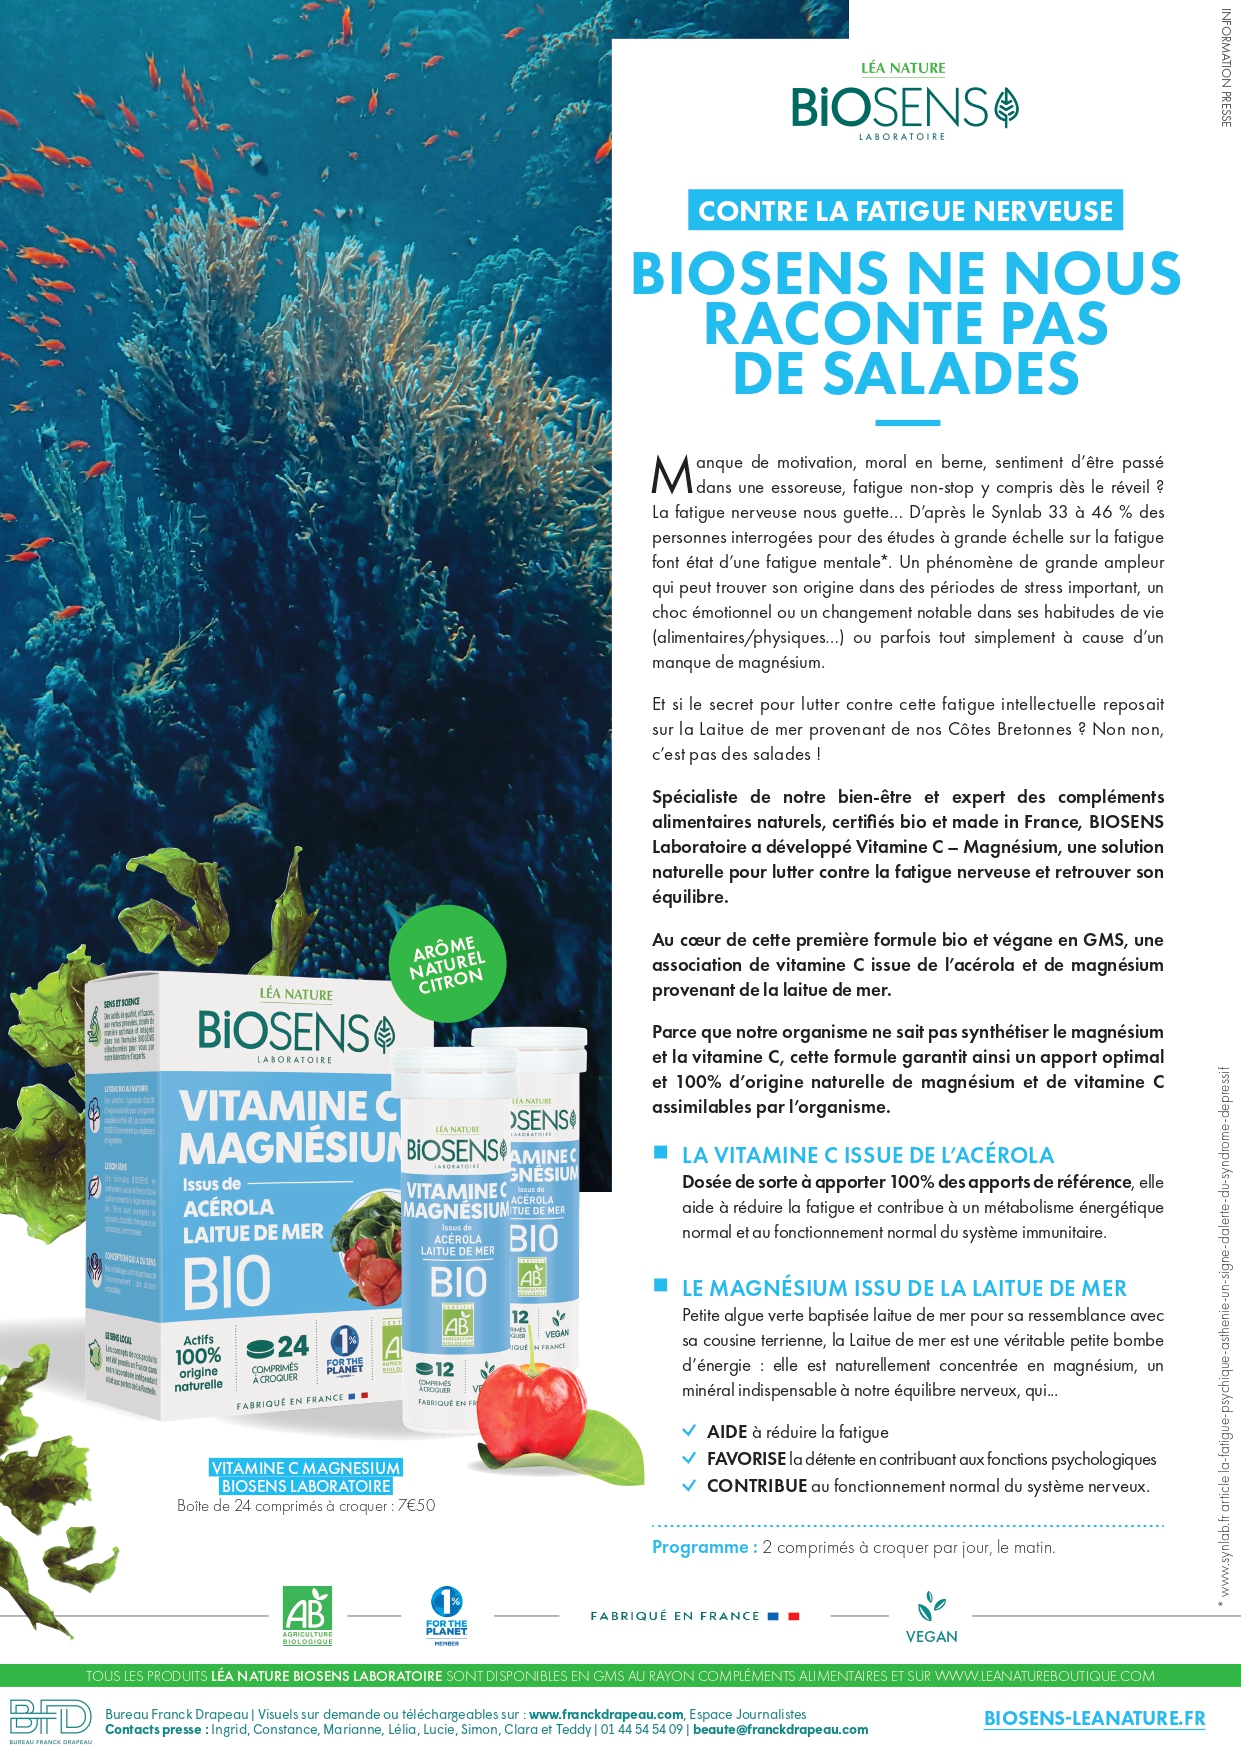 Biosens Laboratoire | Vitamine C et Magnésium bio